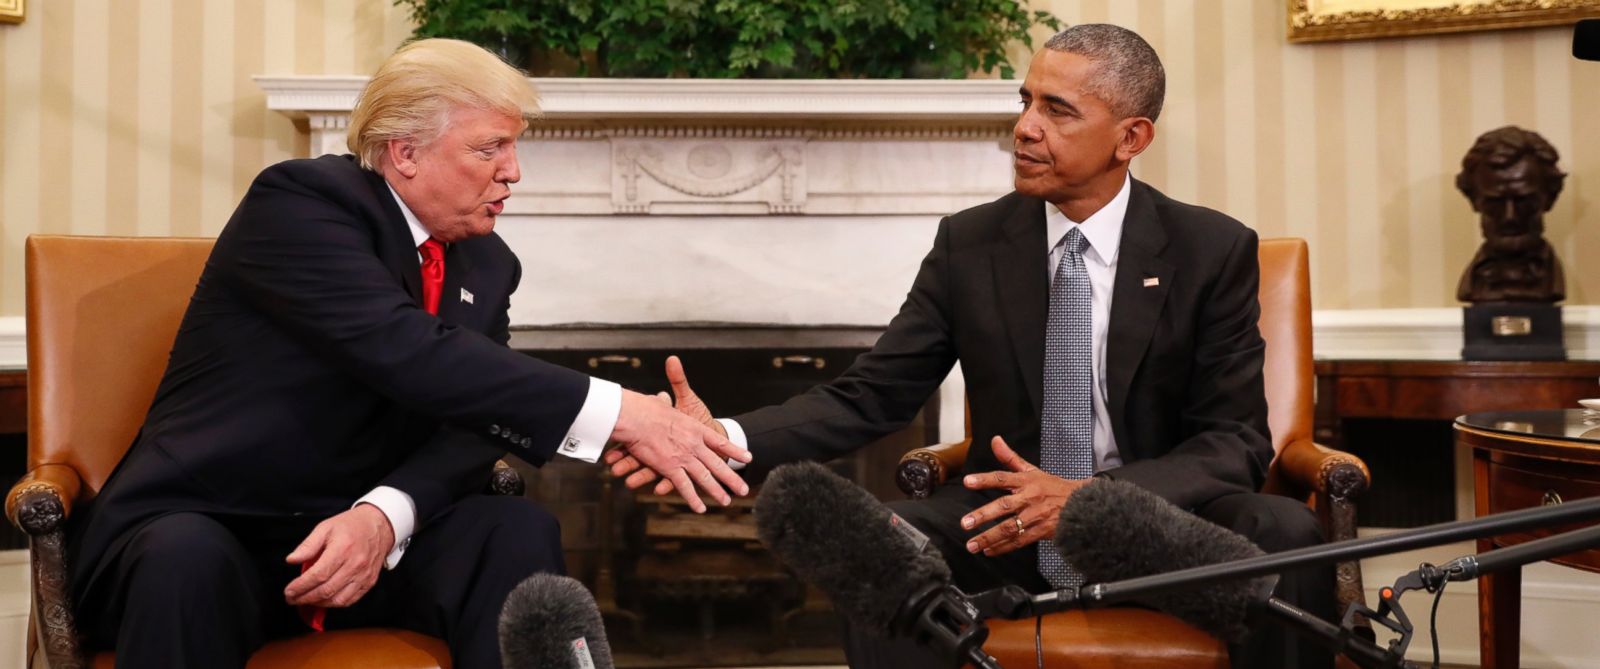 Tổng thống mới đắc cử Donald Trump chính thức gặp mặt đương kim Tổng thống Barack Obama lần đầu tiên để bàn bạc về quá trình chuyển giao quyền lực - Ảnh: AP